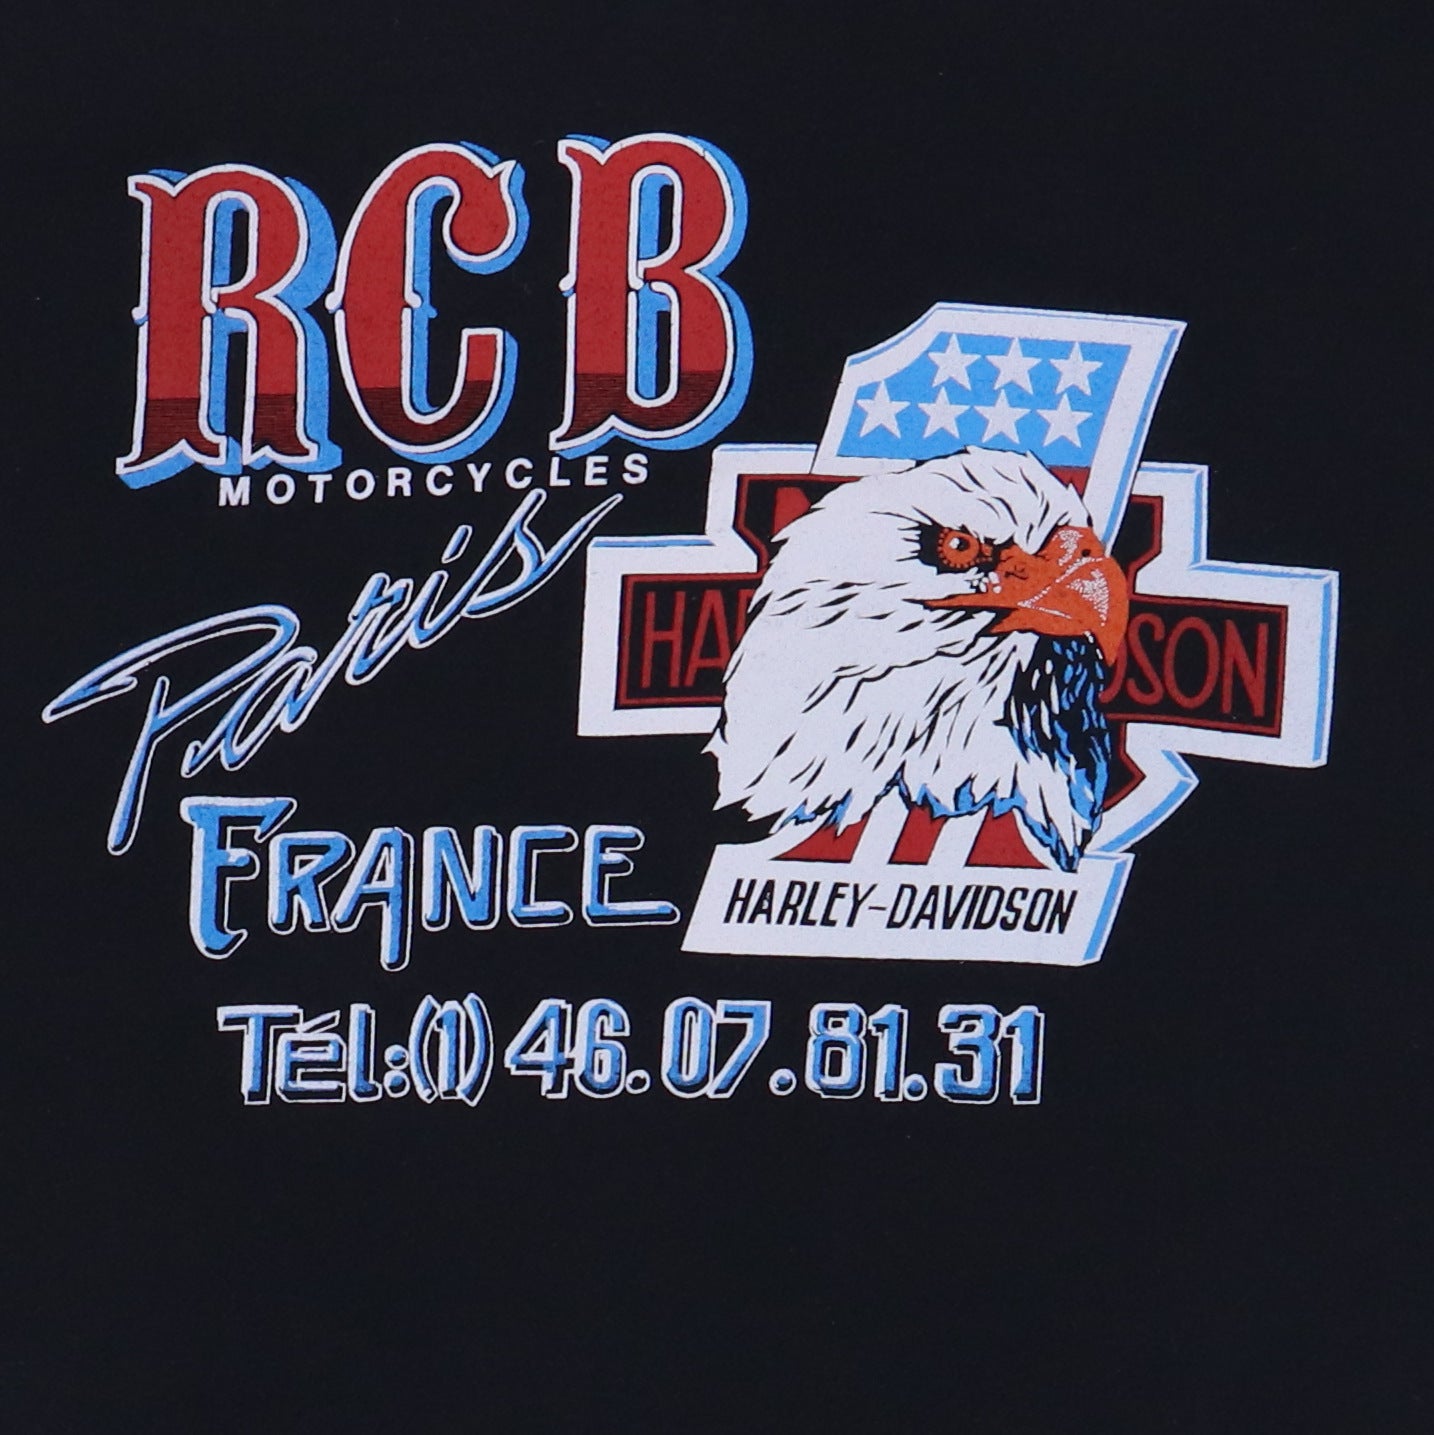 1980s Harley Davidson RCB Motorcycles Shirt